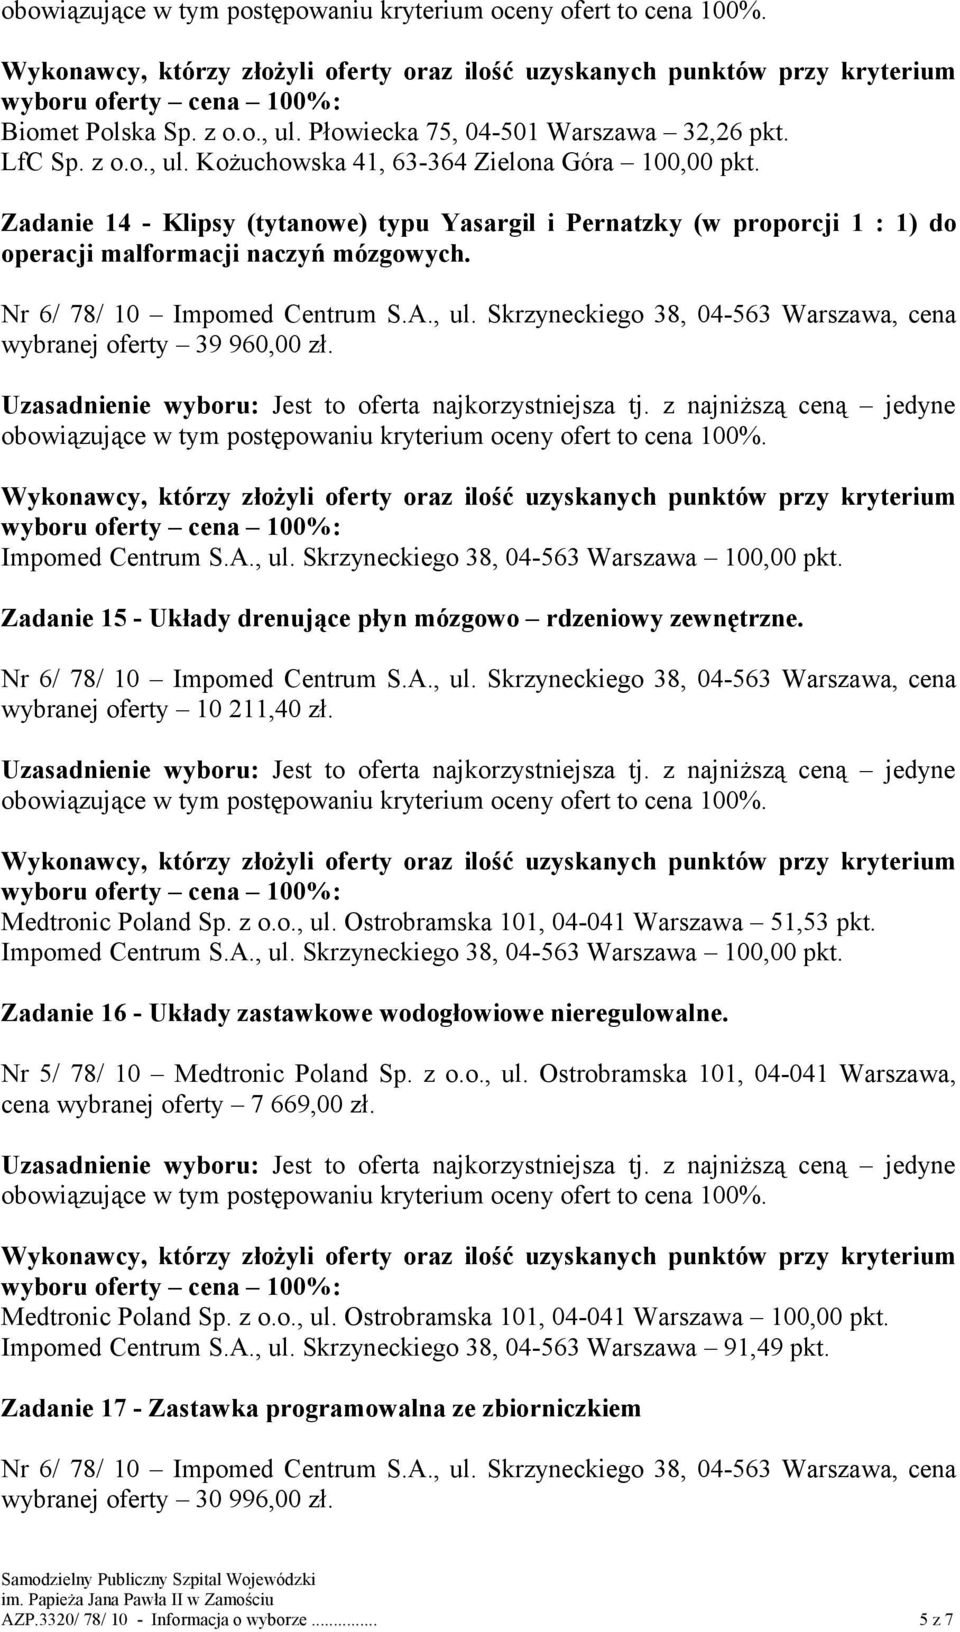 Ostrobramska 101, 04-041 Warszawa 51,53 pkt. Zadanie 16 - Układy zastawkowe wodogłowiowe nieregulowalne. Nr 5/ 78/ 10 Medtronic Poland Sp. z o.o., ul.